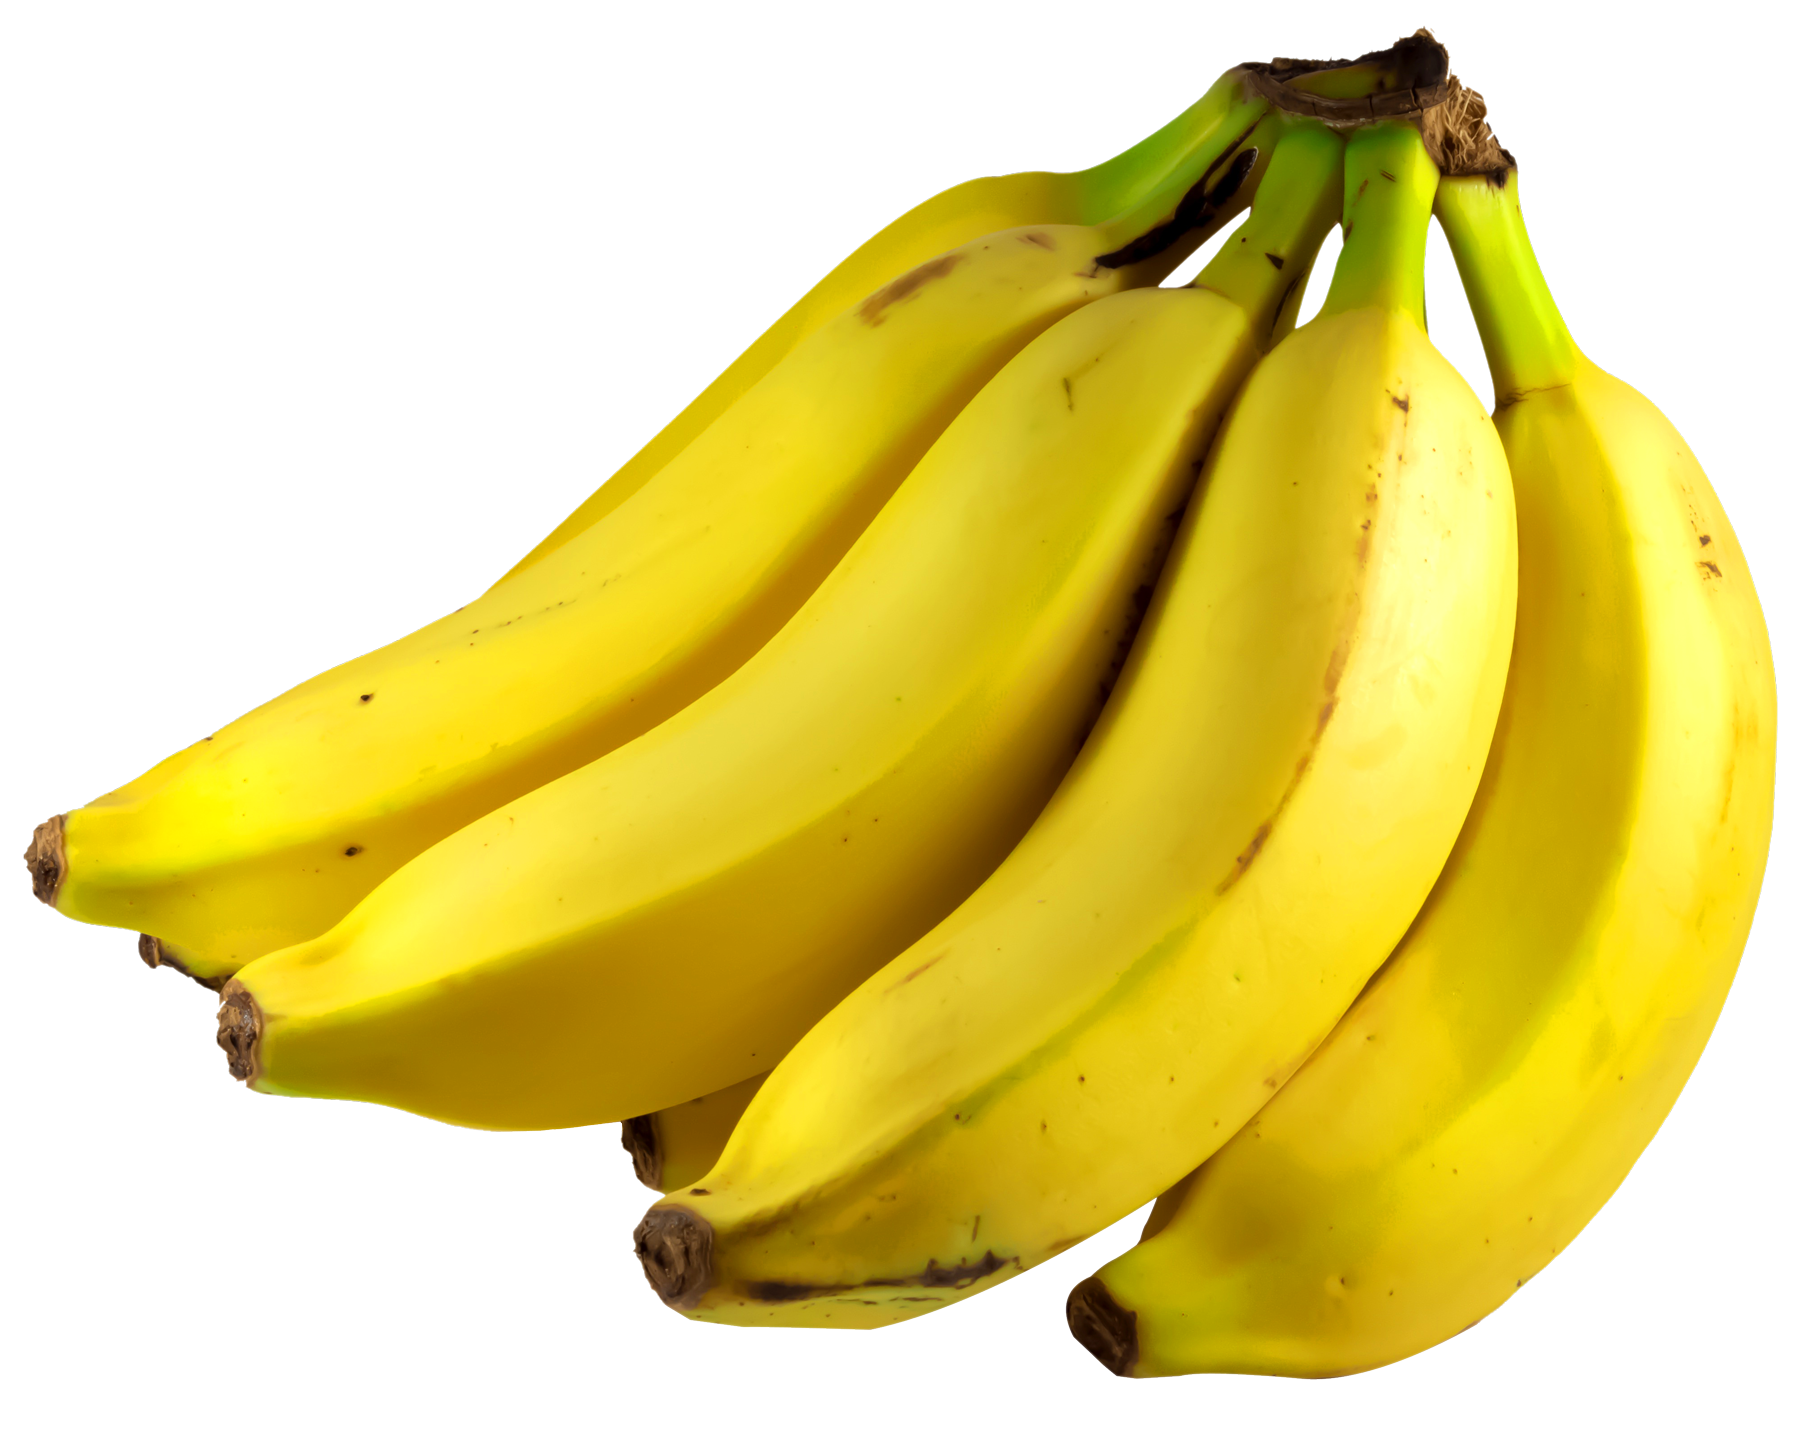 Bunch Of Bananas Png Image - Banana, Transparent background PNG HD thumbnail